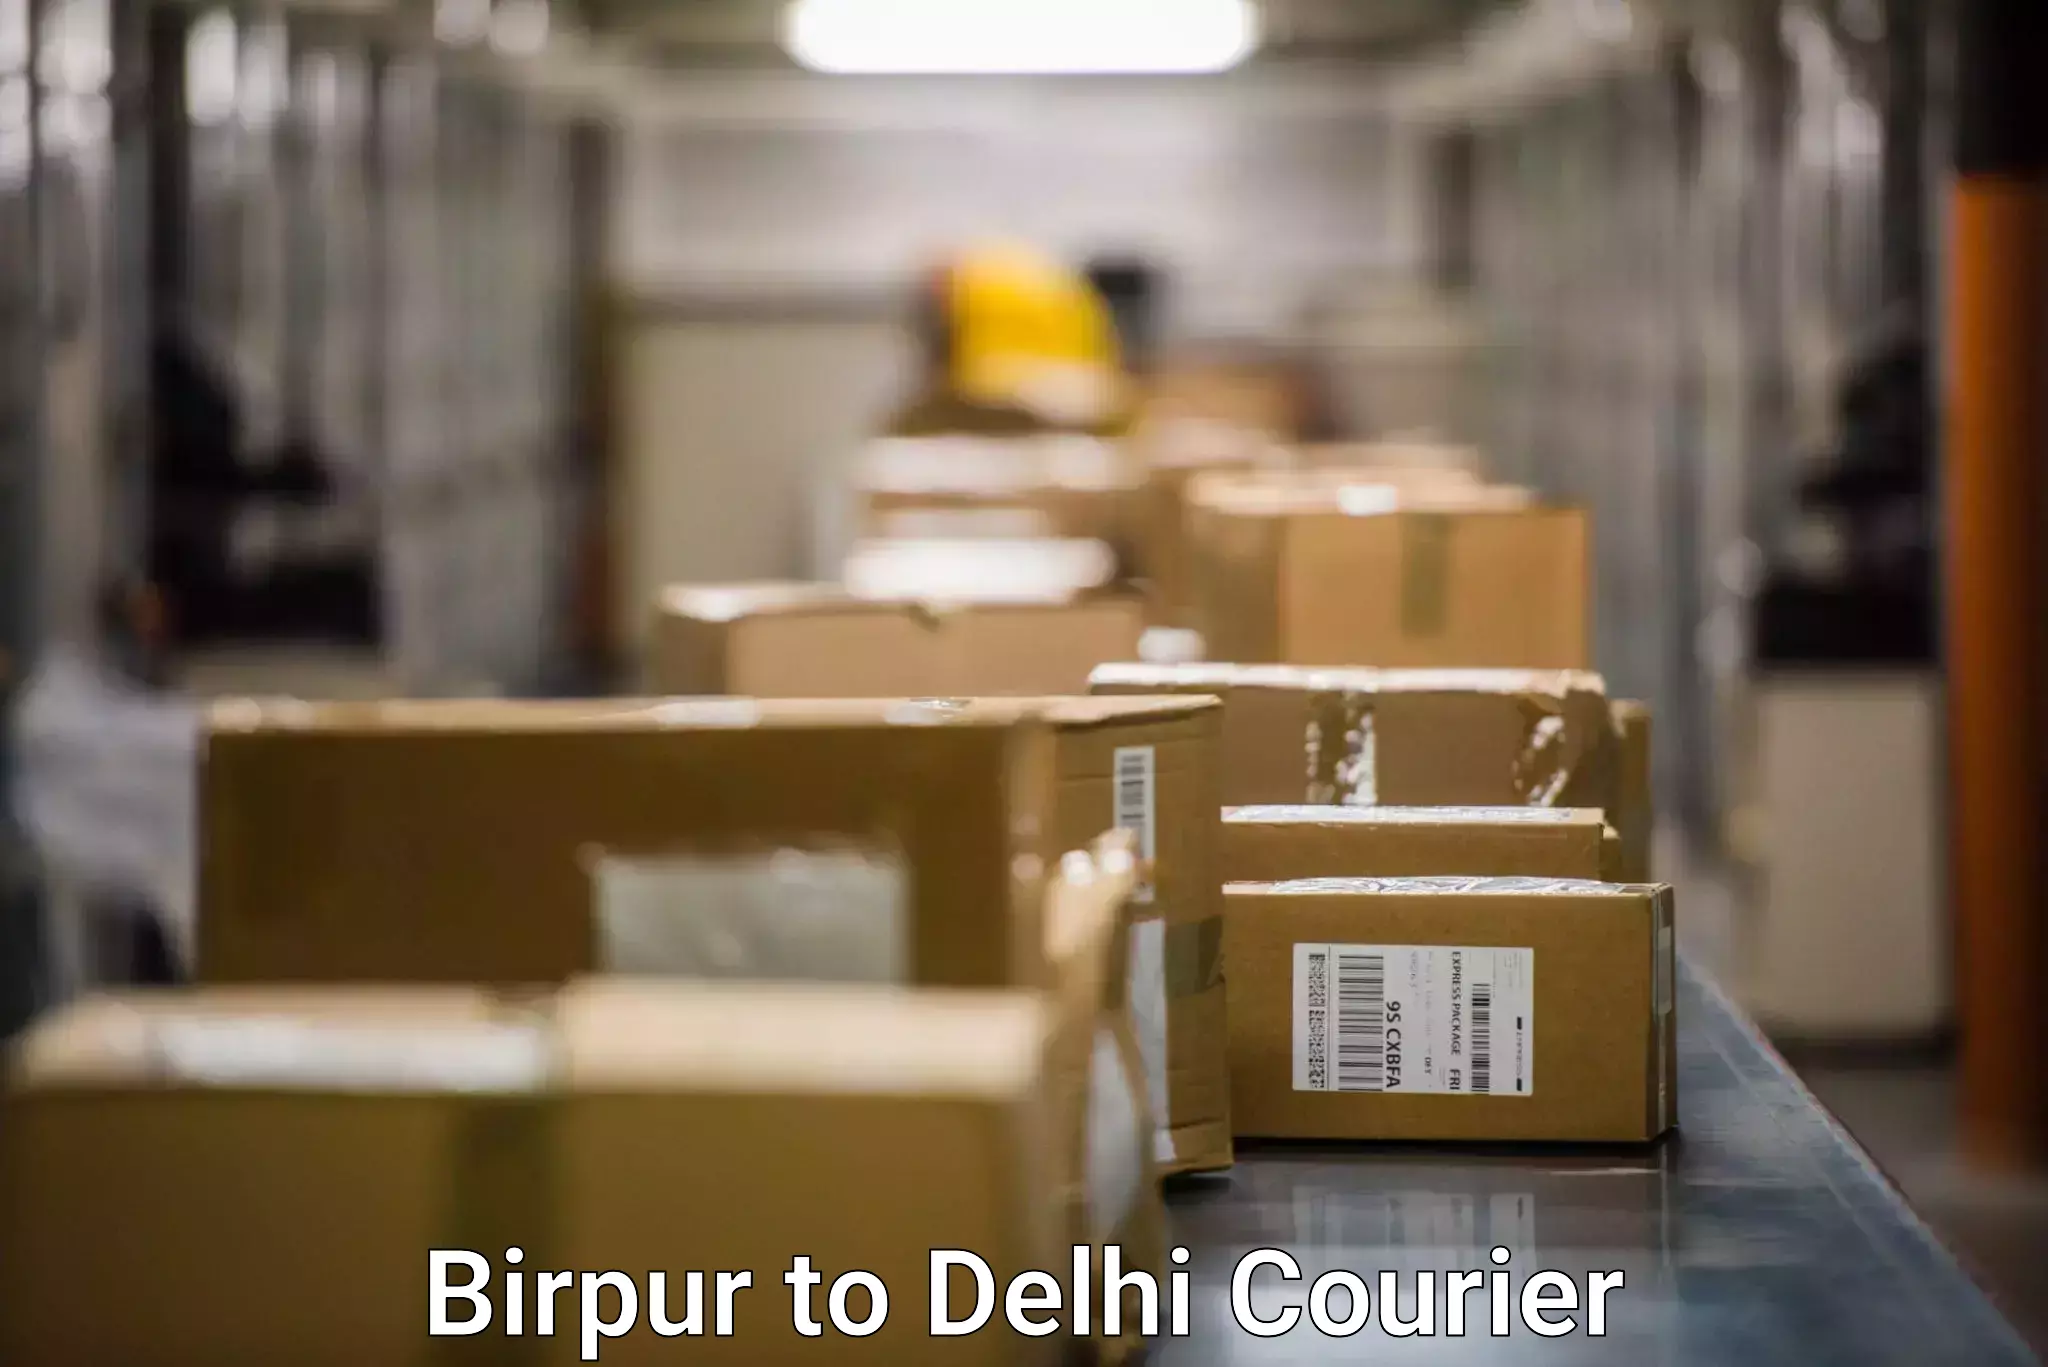 Rural area delivery Birpur to Jamia Millia Islamia New Delhi